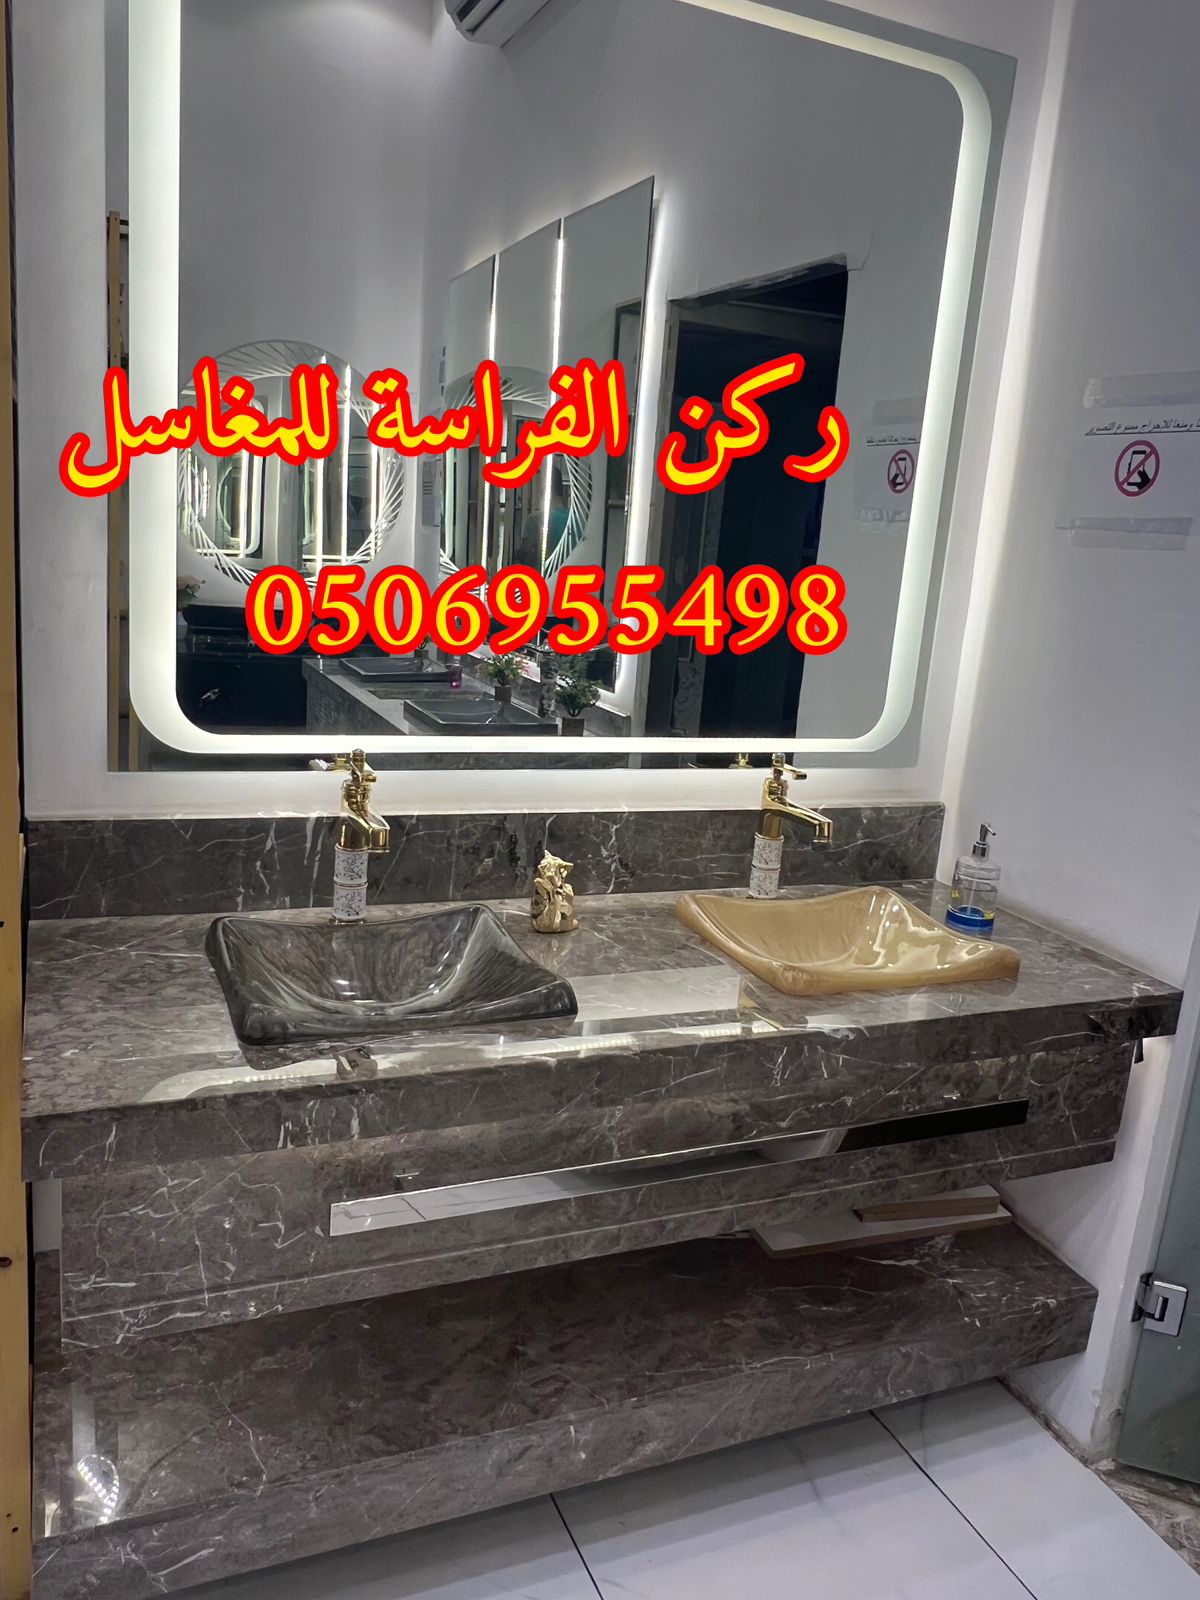 احواض مغاسل رخام في الرياض,0506955498